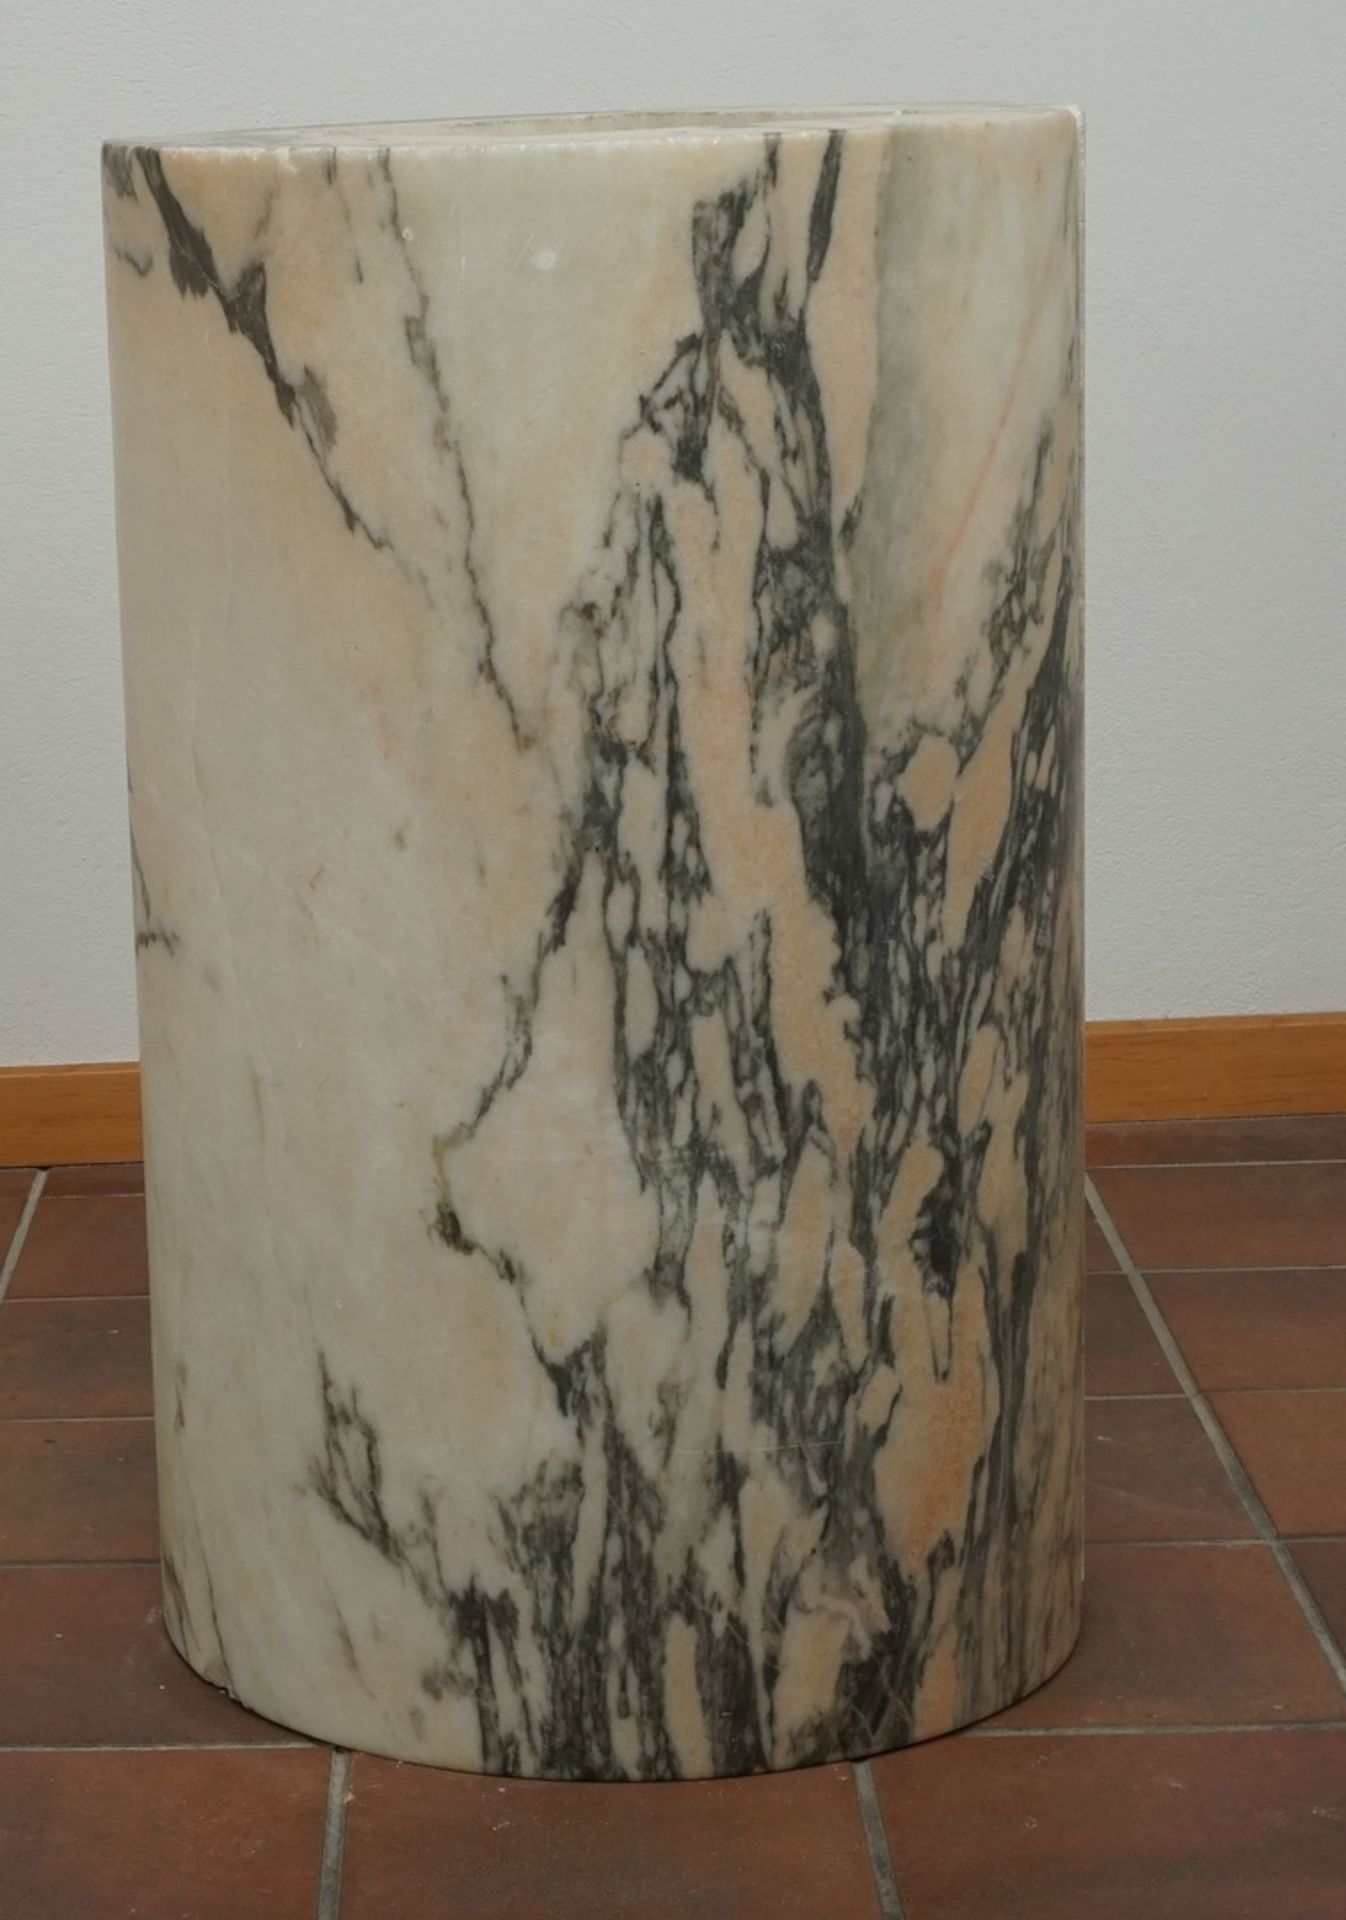 Marmor Stele / Postamentzweiteilig, schwarz-weiß-grün-orange marmoriert, altersgemäßer Zustand, - Bild 3 aus 3